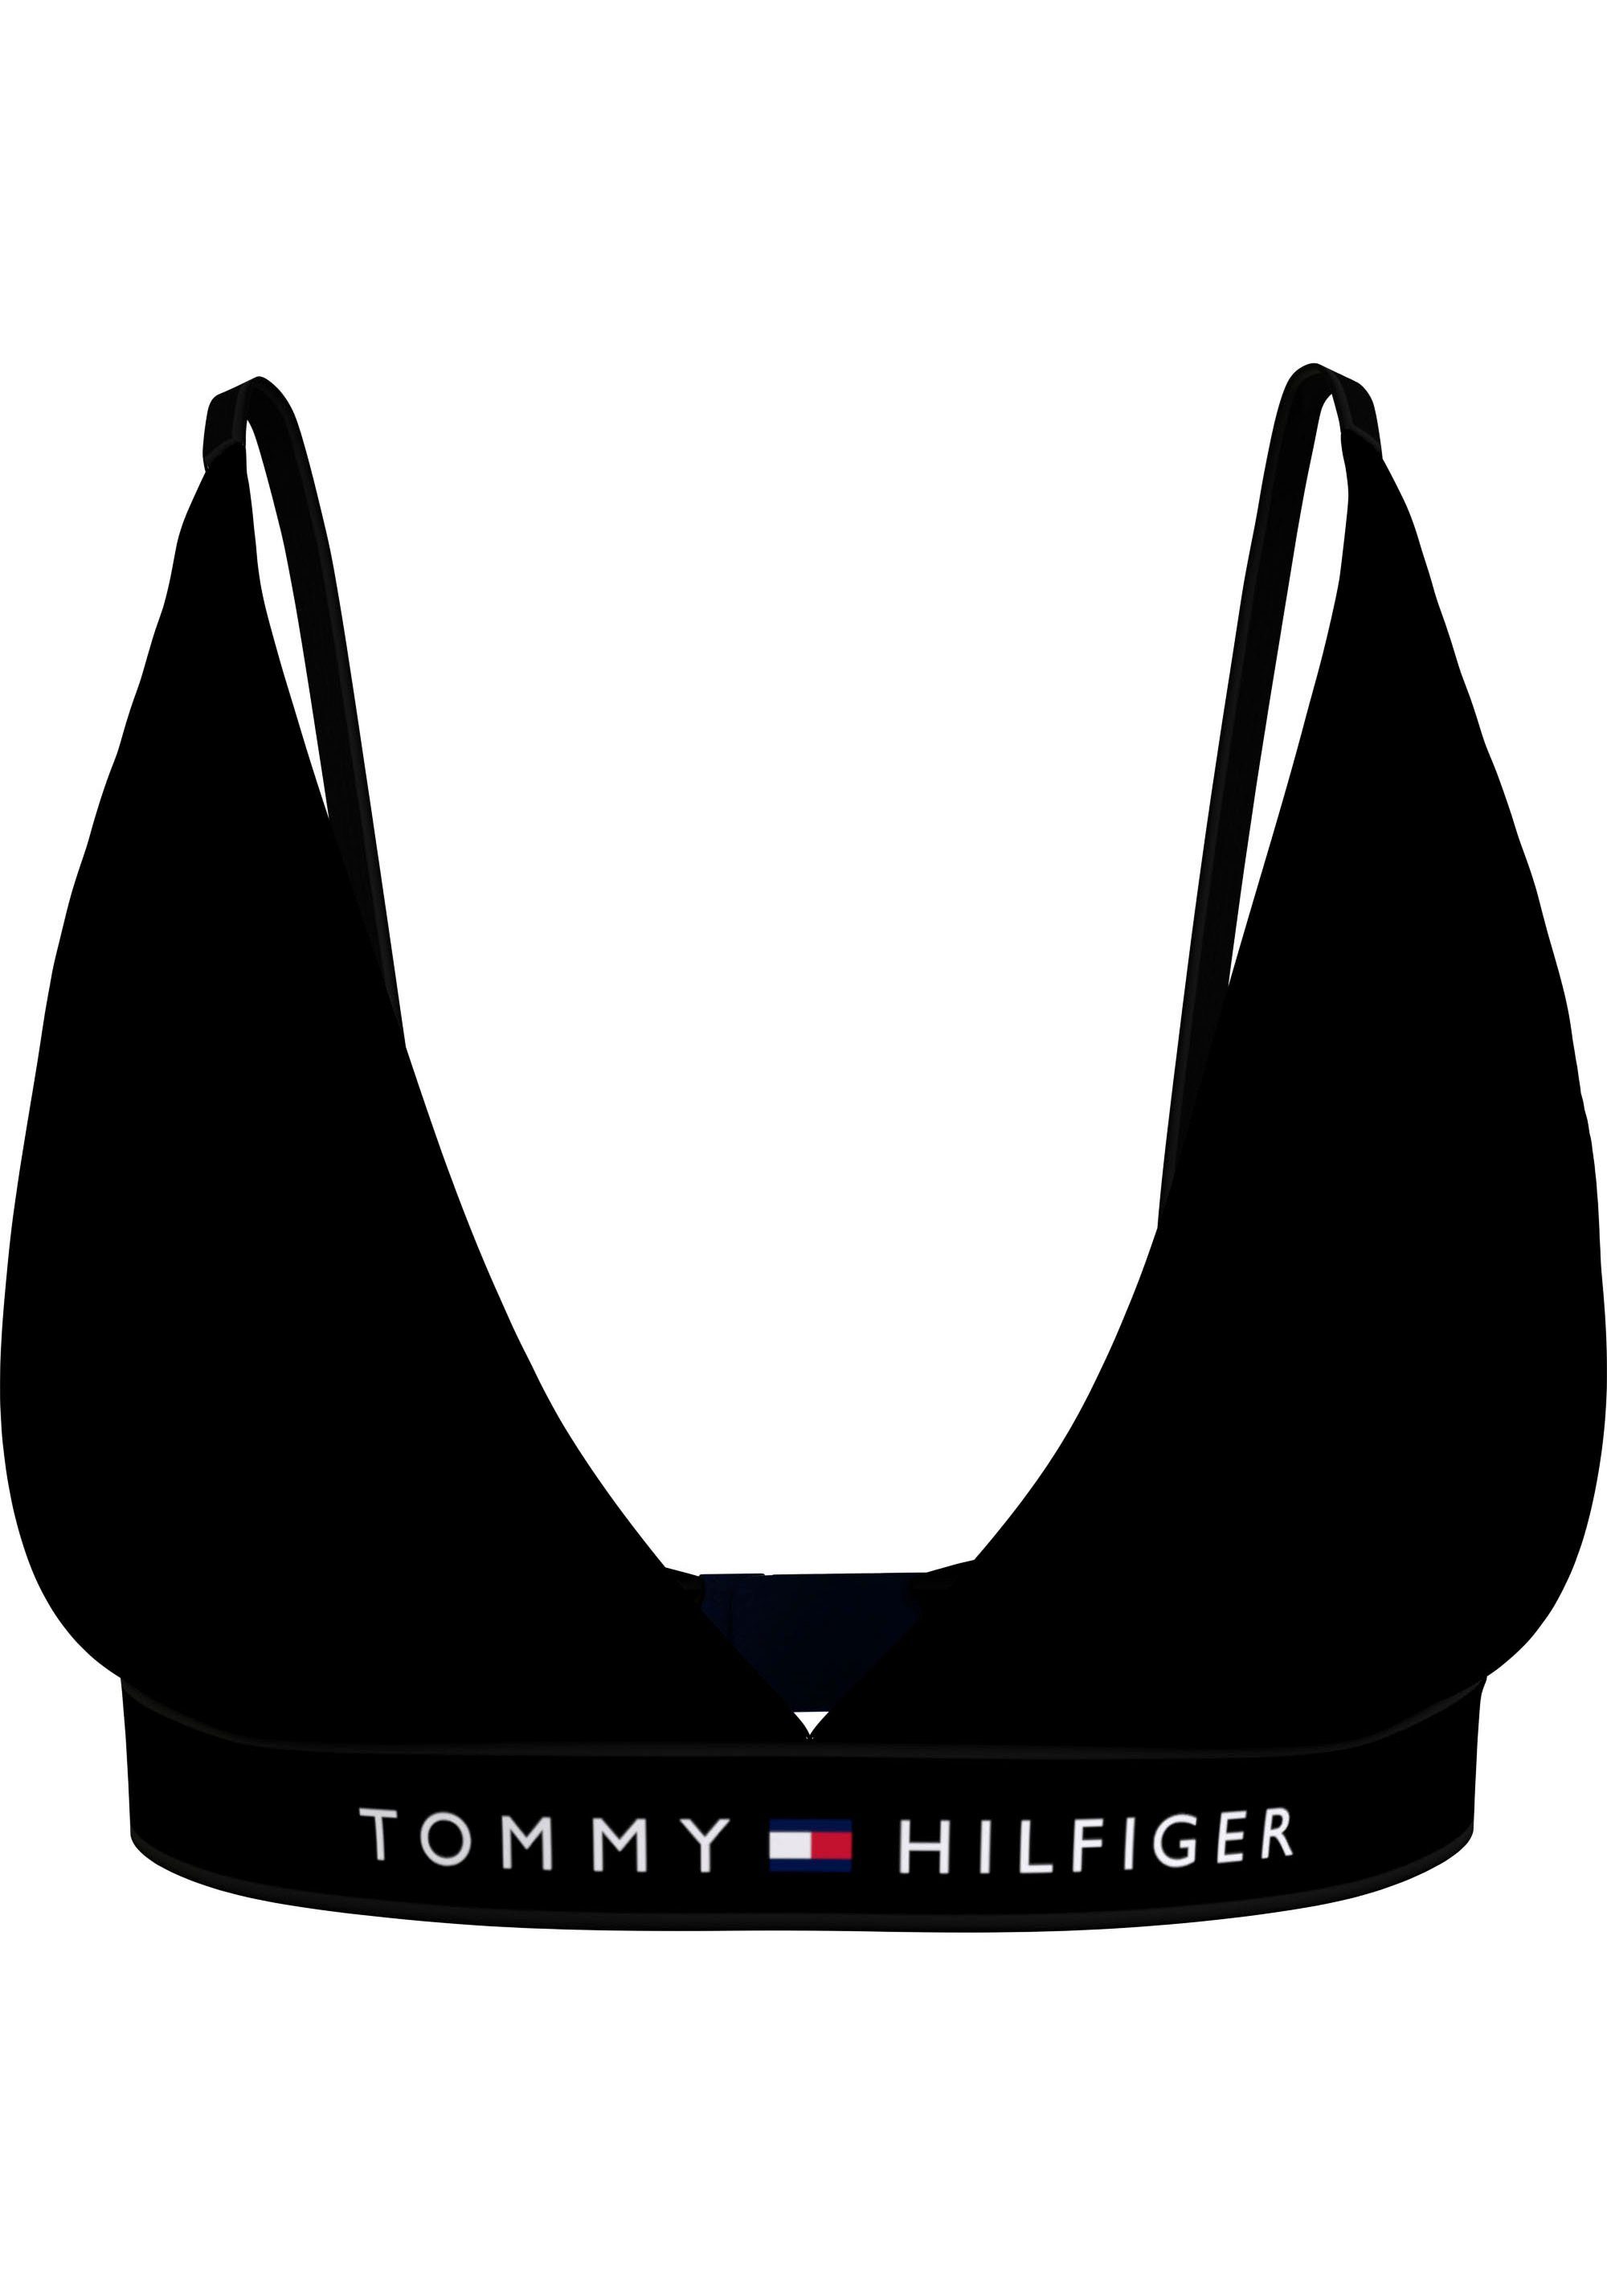 UNLINED Hilfiger Markenlabel mit Underwear Hilfiger Black Tommy Tommy TRIANGLE Bralette-BH